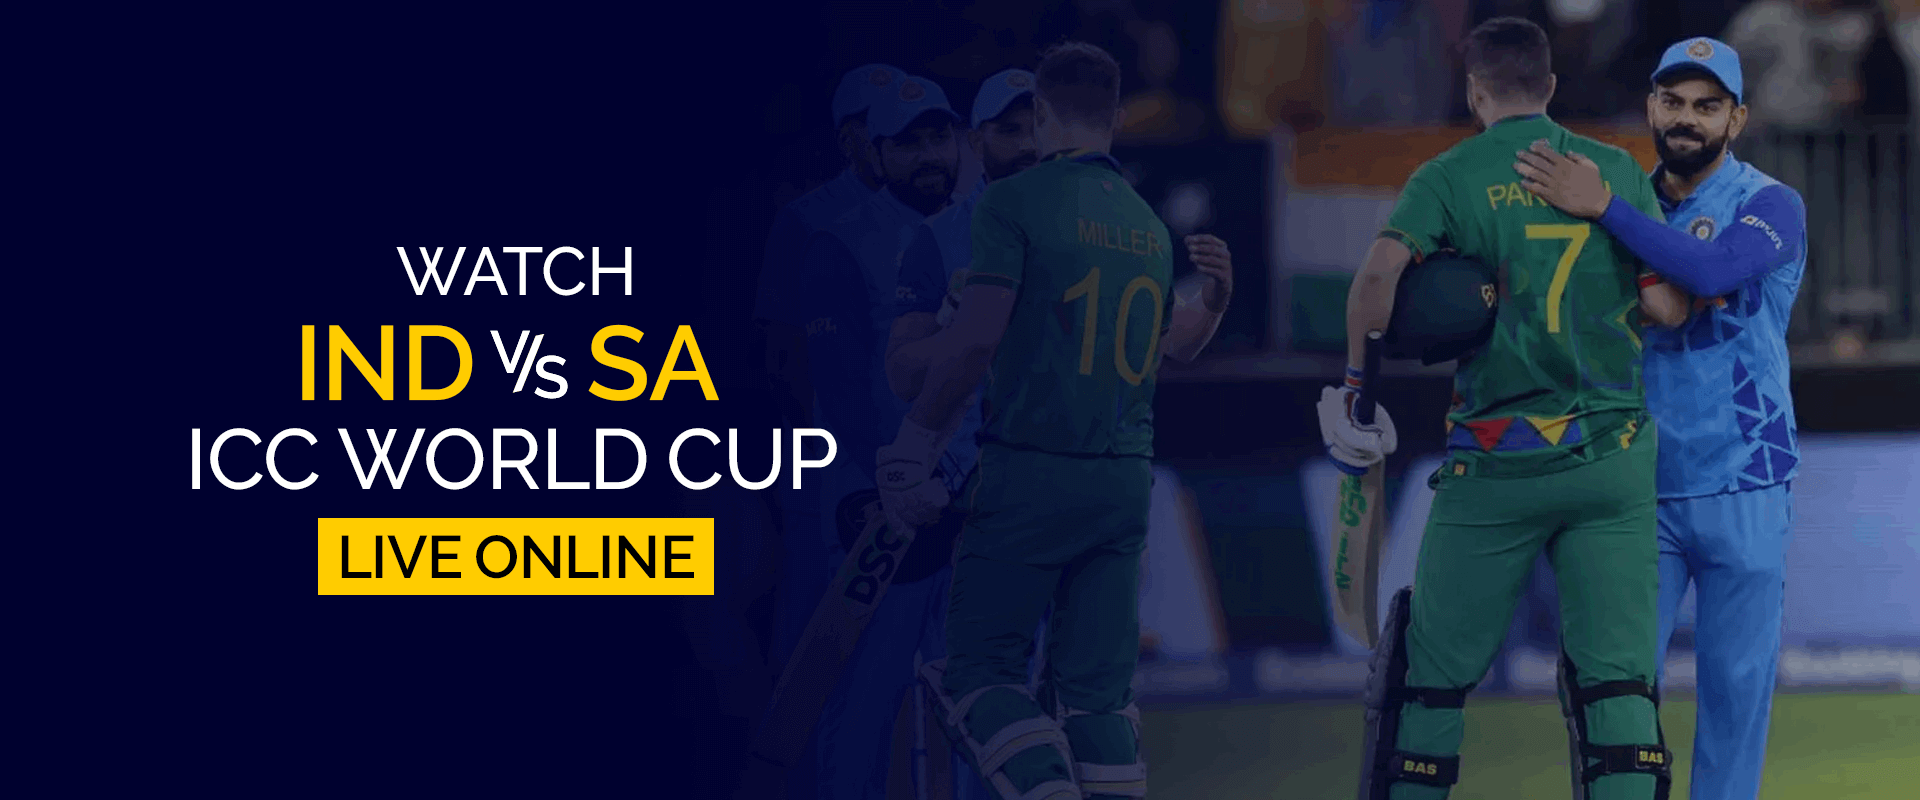 Смотрите матч чемпионата мира ICC между Индией и Южной Африкой в ​​прямом эфире онлайн